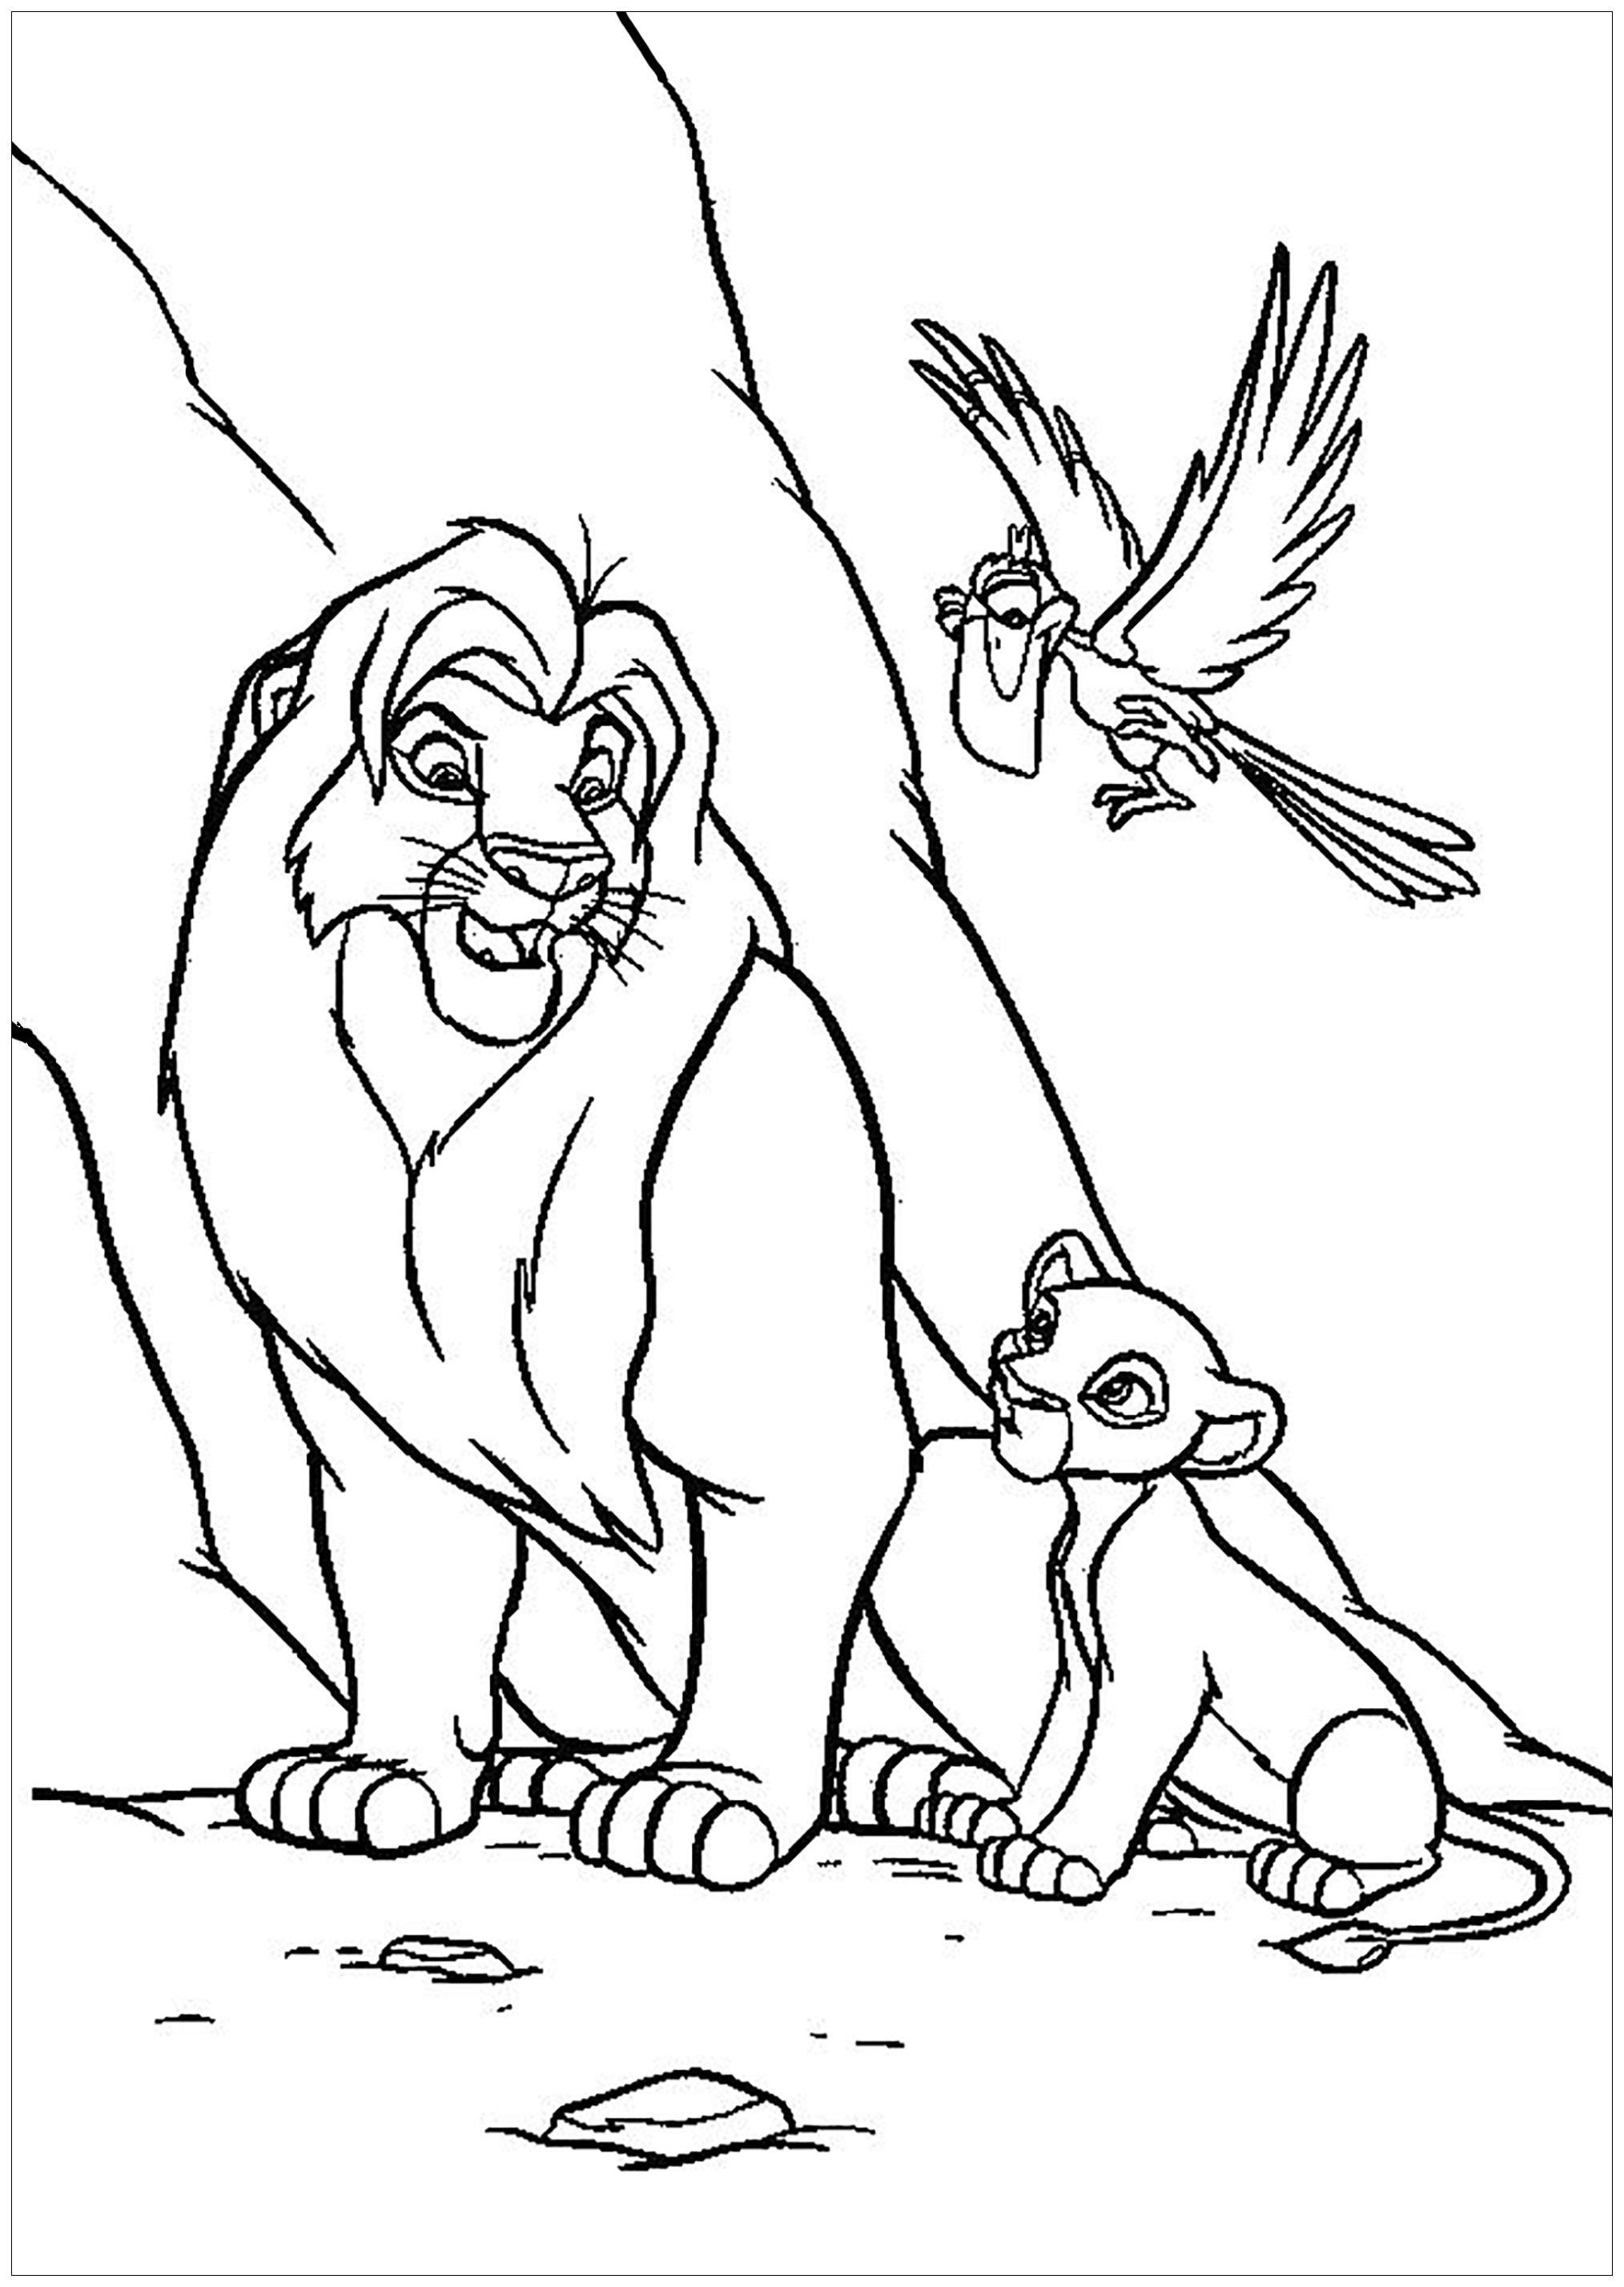 Coloriage du Roi Lion (classique Disney) avec Mufasa et Simba, avec Zazu